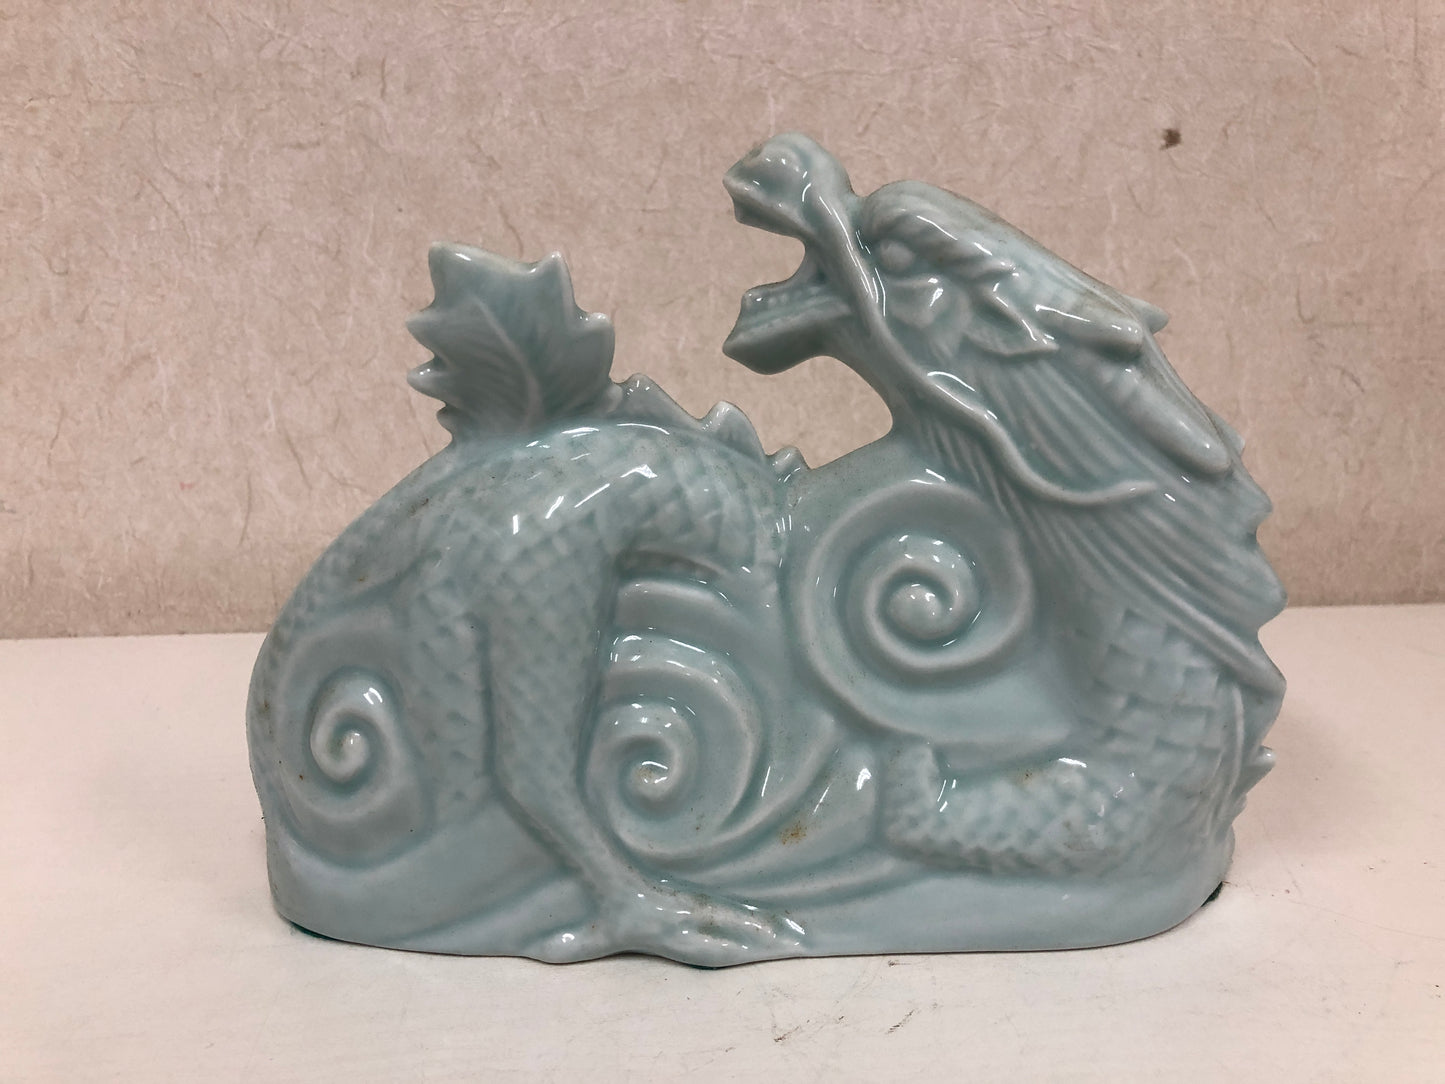 Y4088 OKIMONO Celadon Dragon figure ceramic Japan antique vintage decor interior